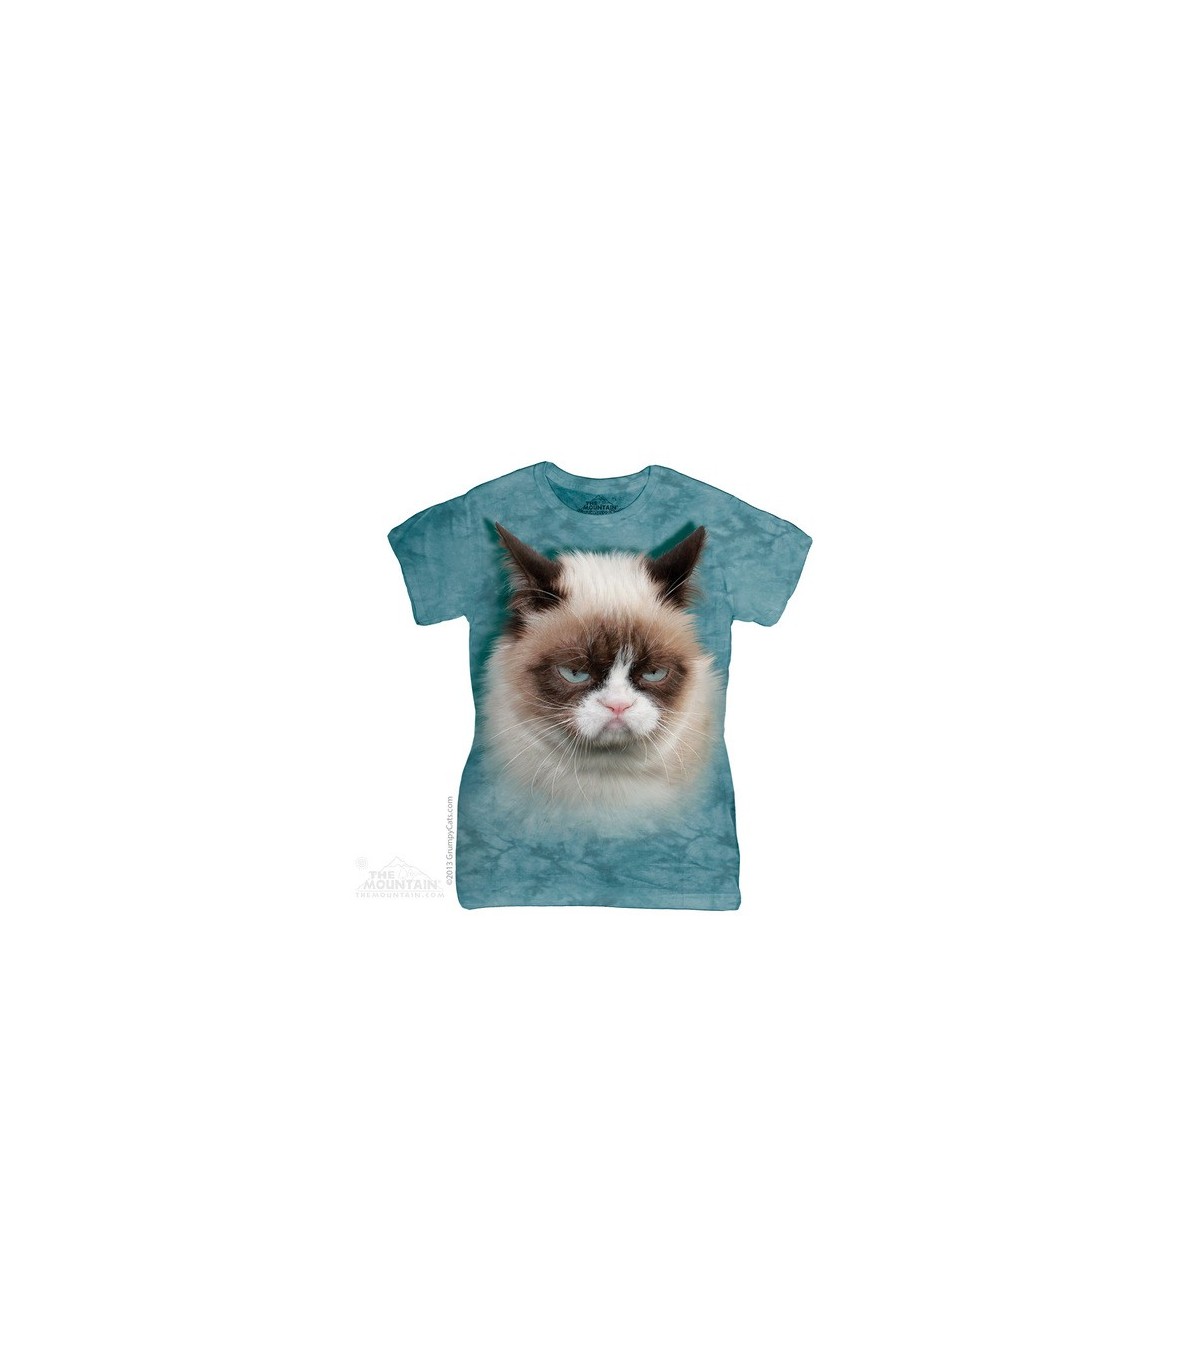 grumpy cat sweatshirt